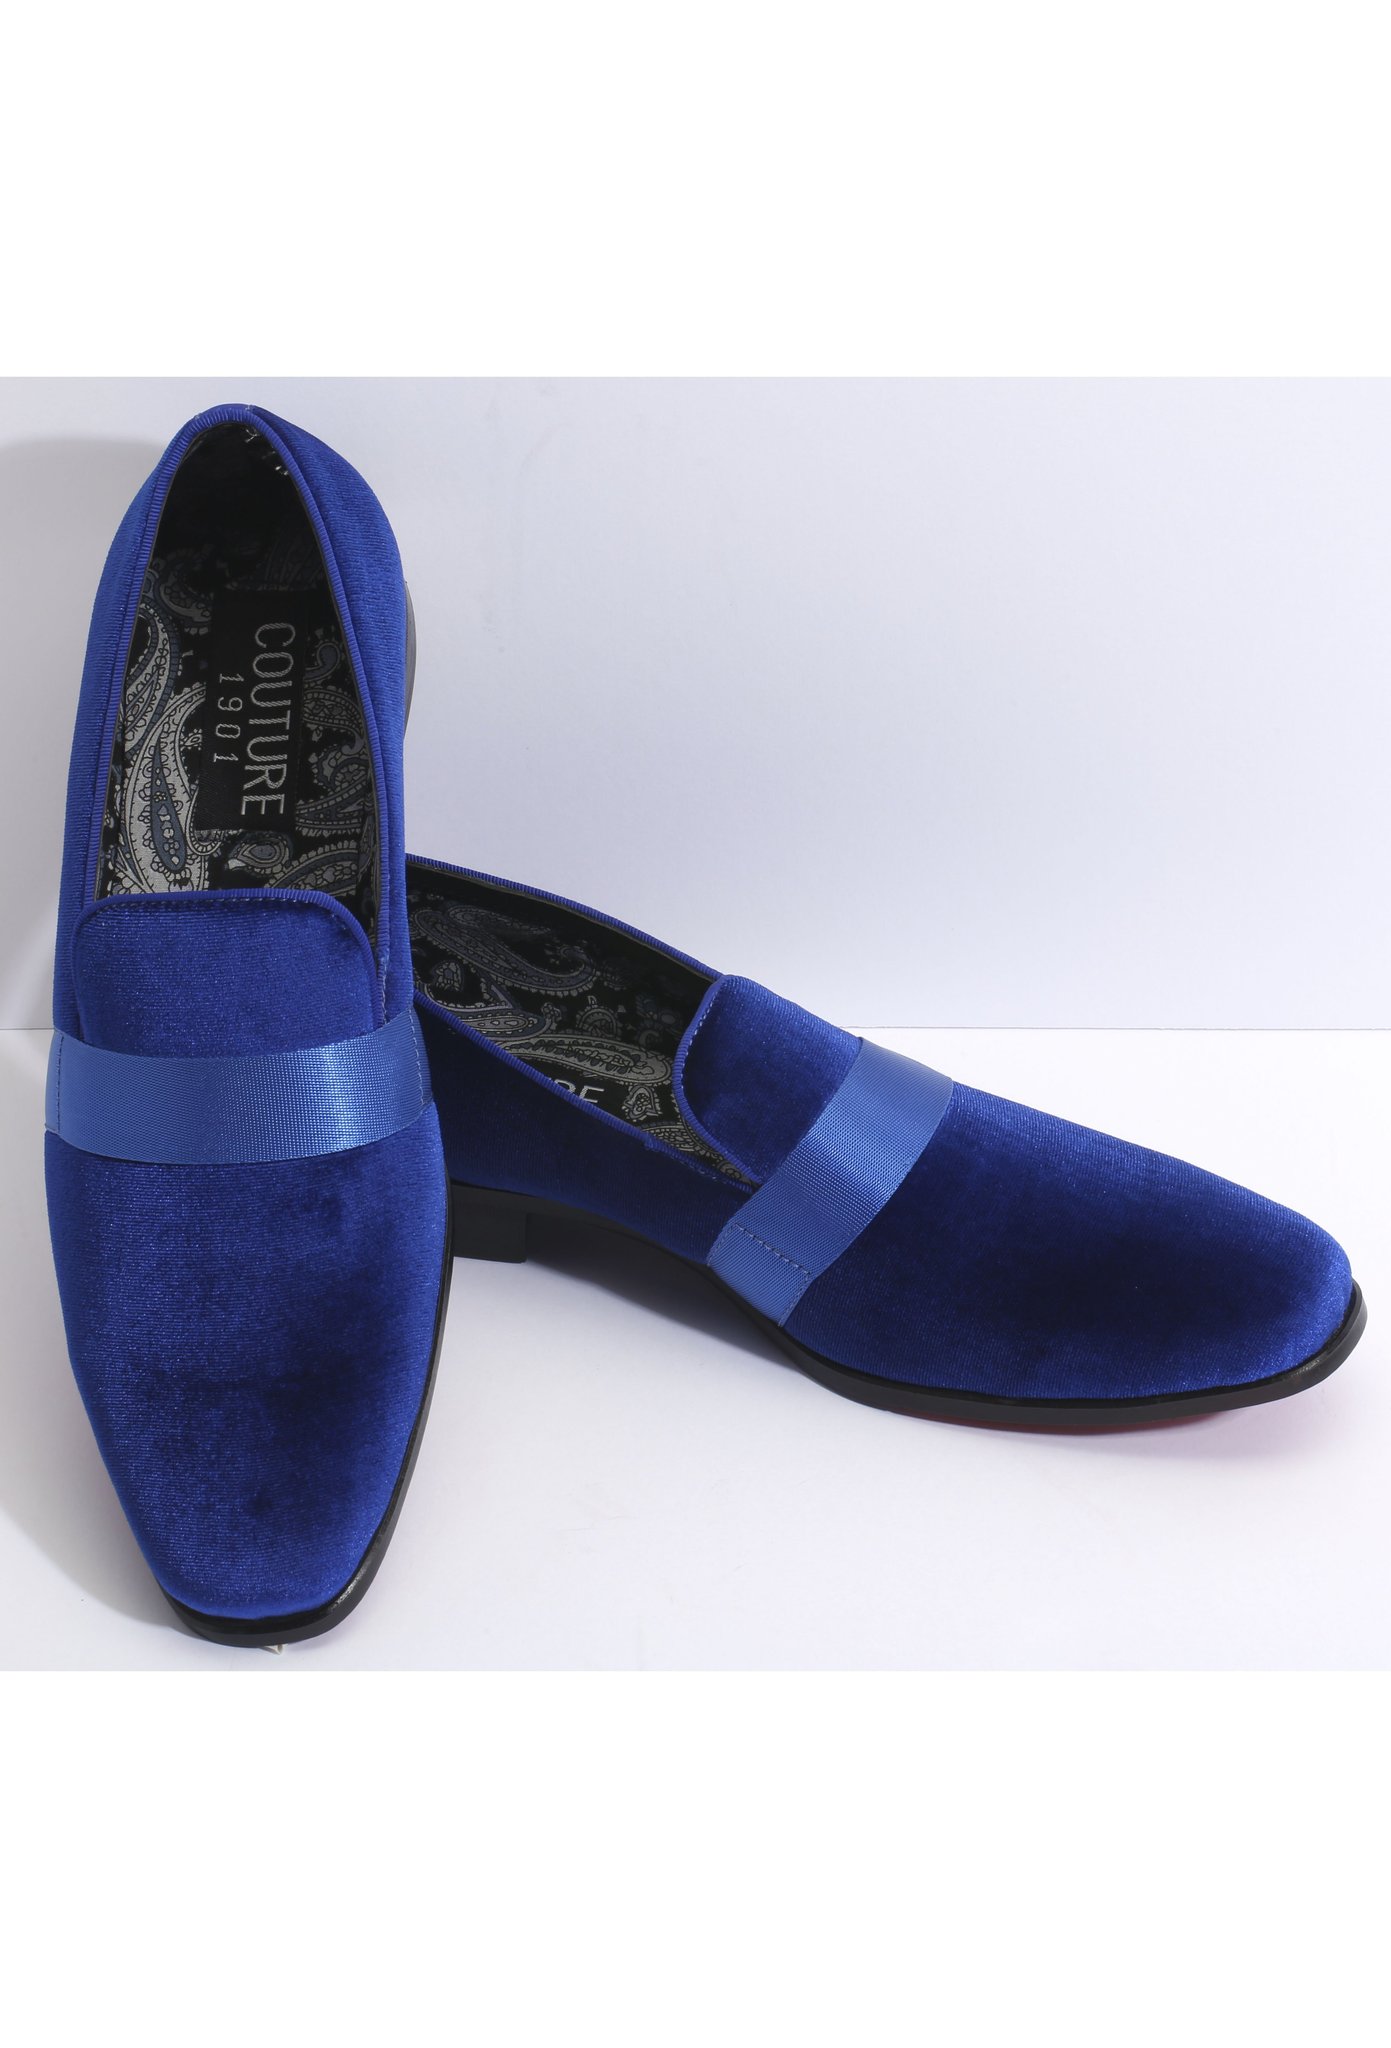 Couture Royal Blue Velvet Shoes - Top Hat Tuxedo